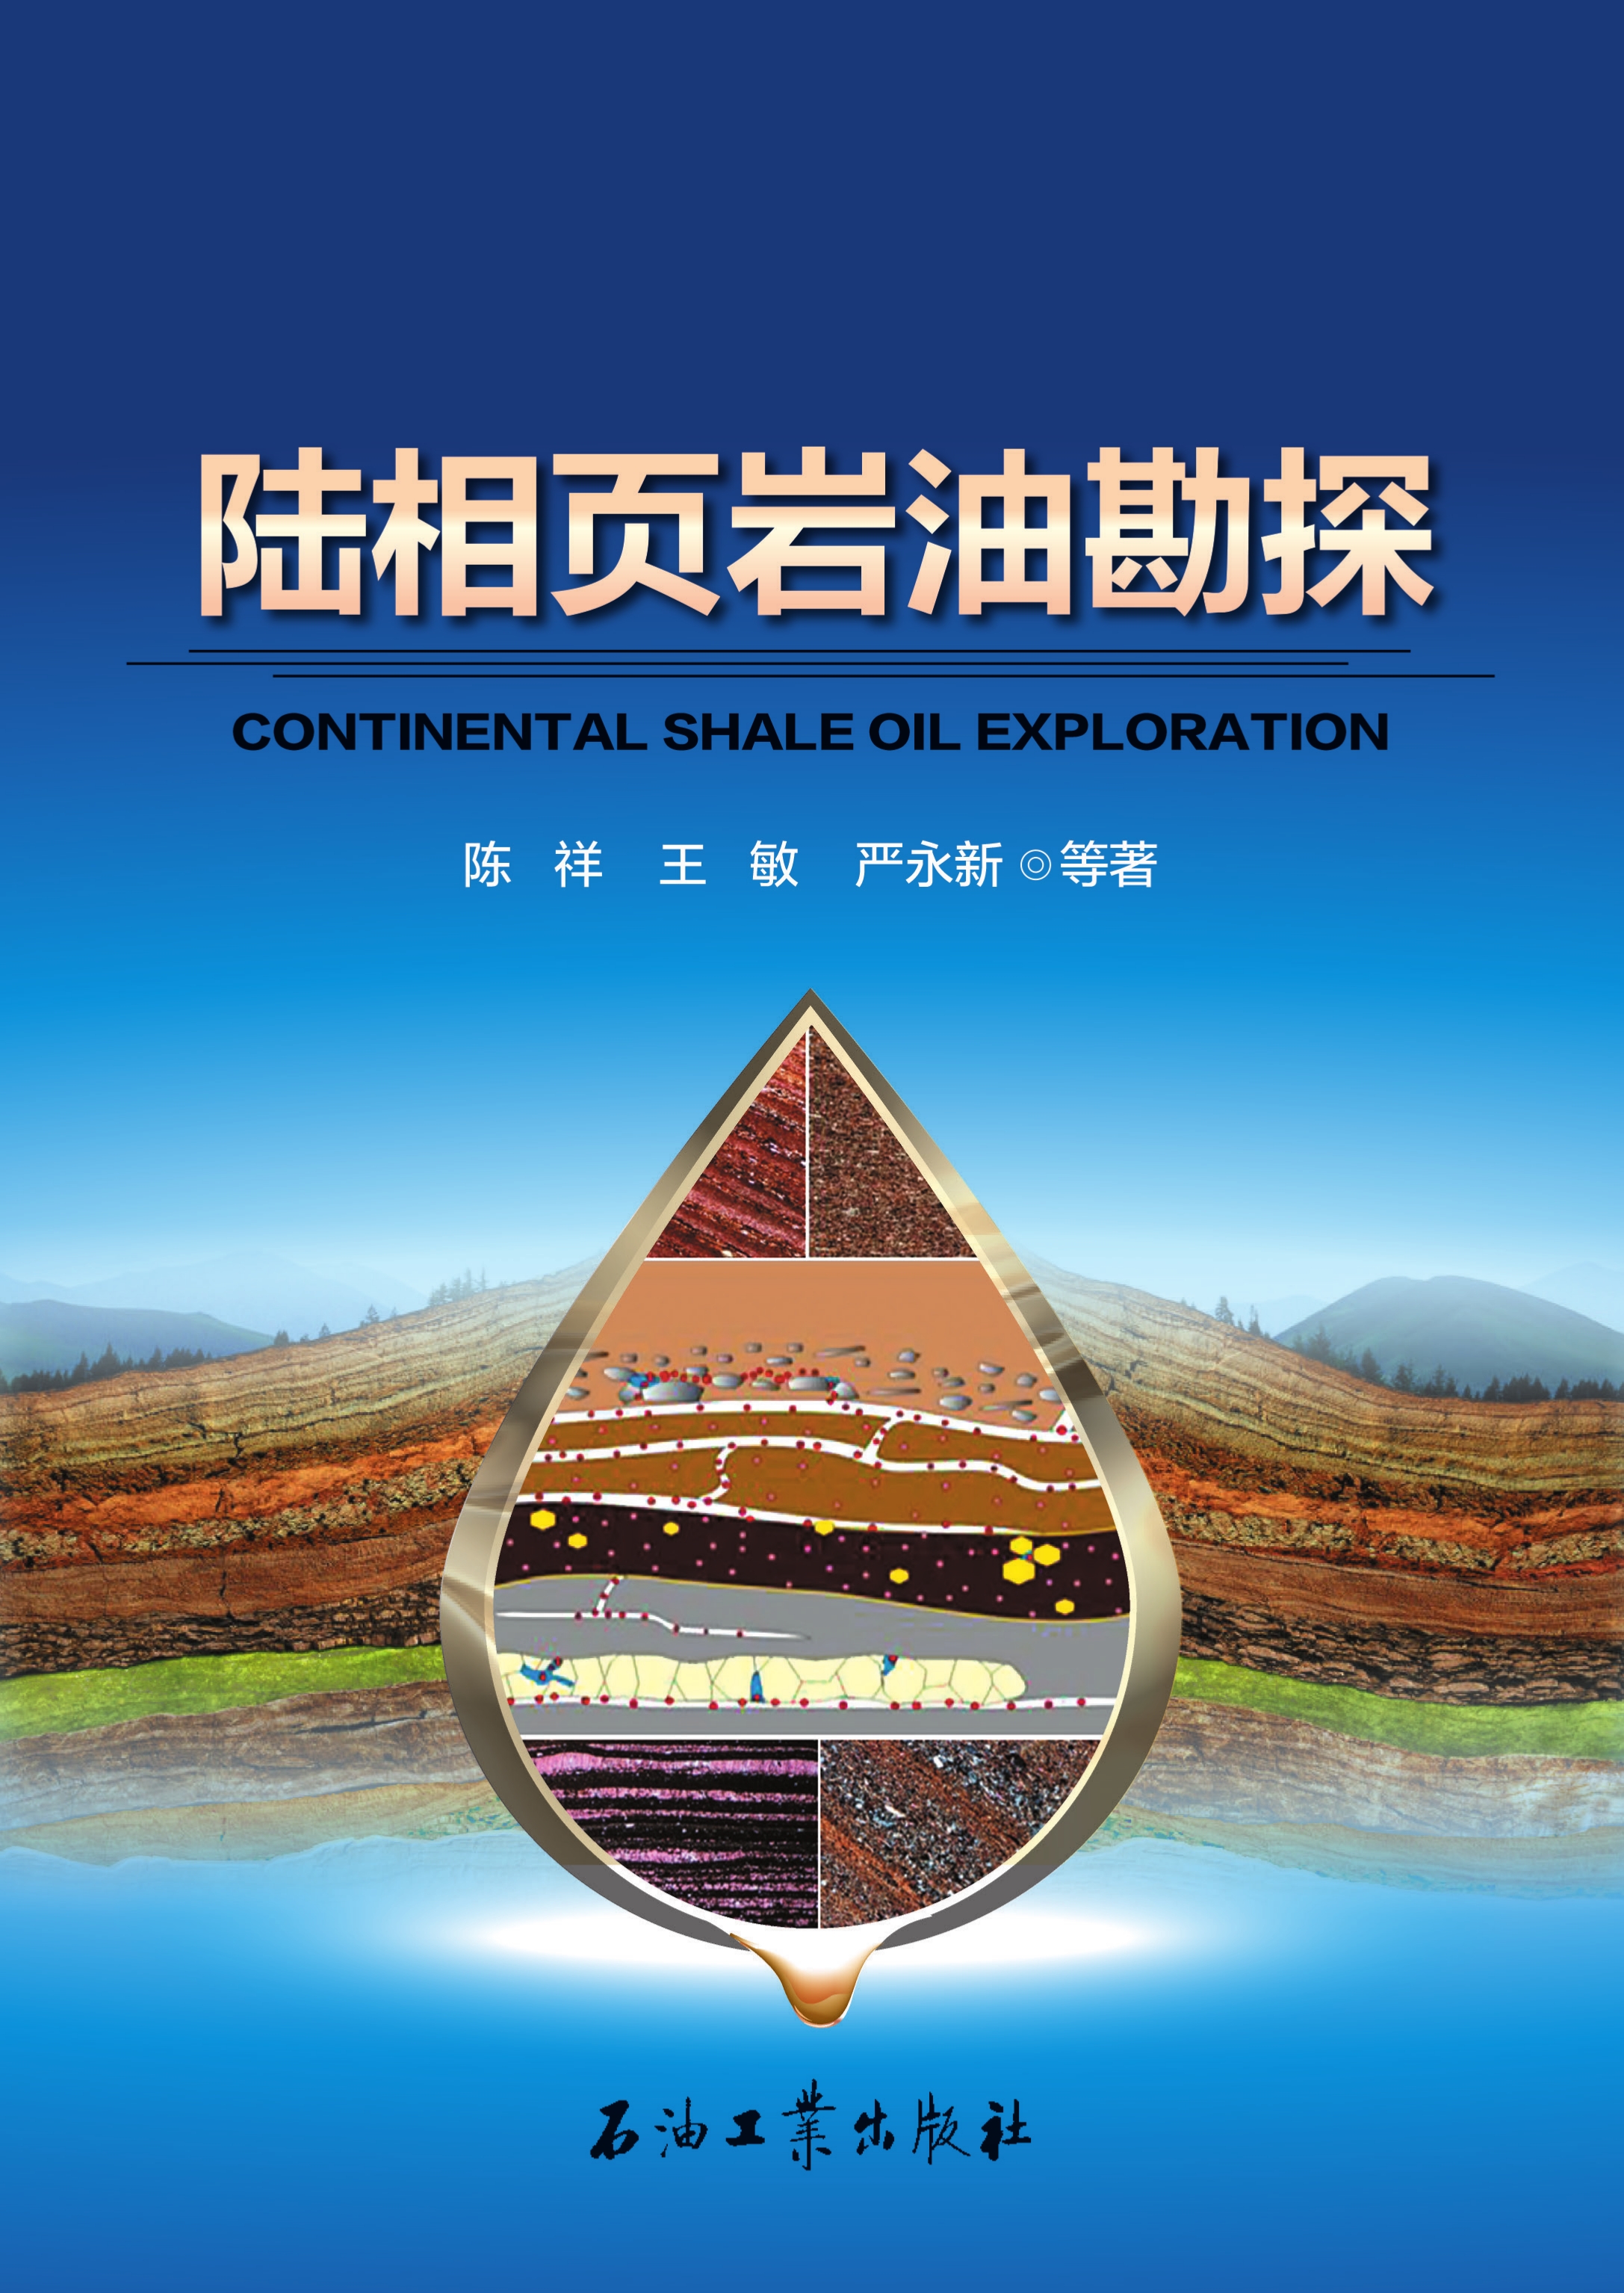 狮扑体育注册:中国石化以重点产区试点示范推动页岩油勘探开发取得更大突破